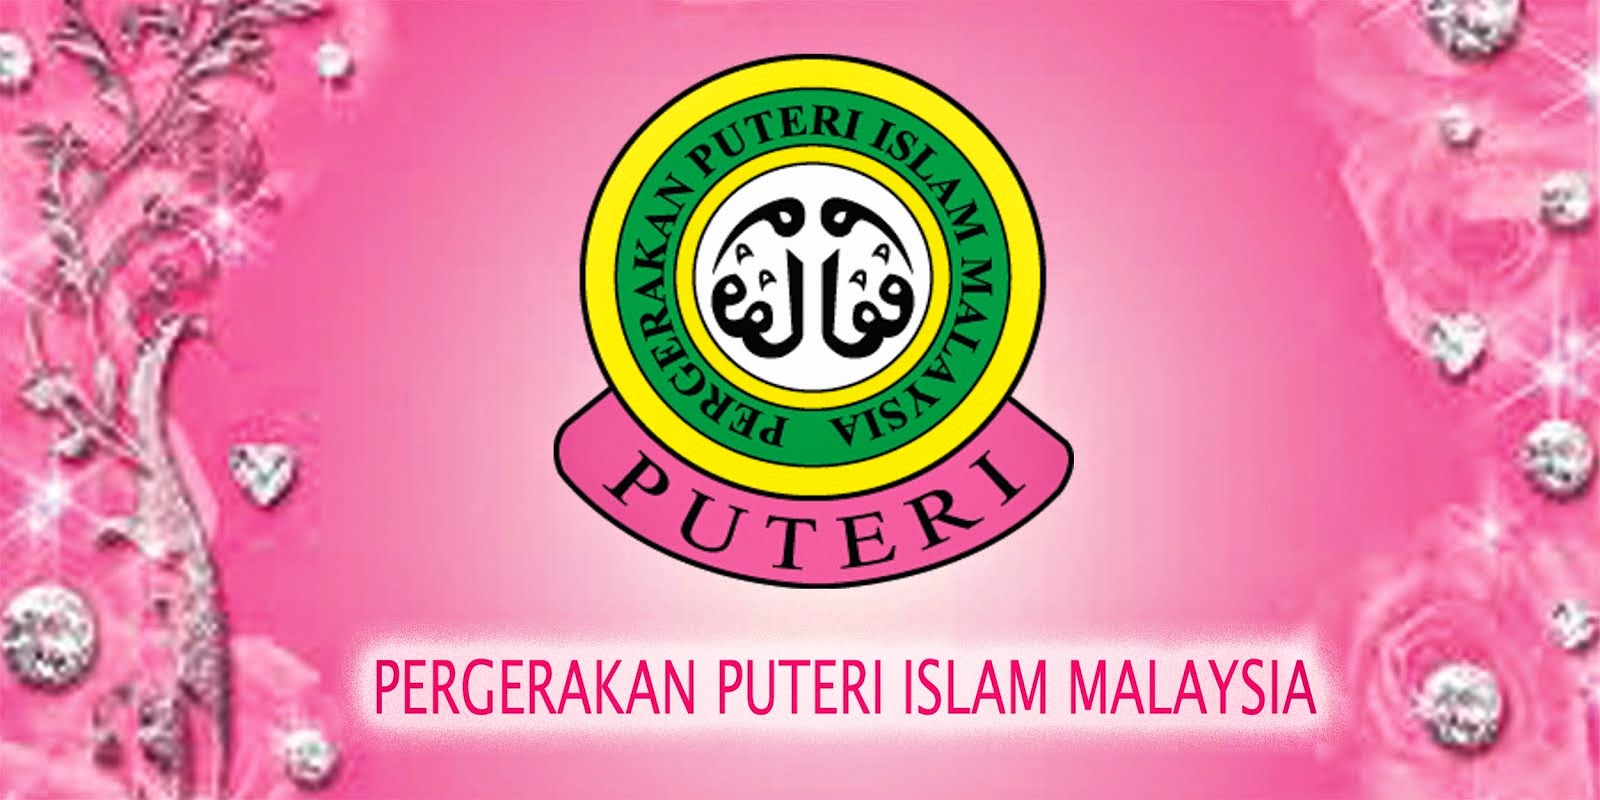 Persatuan Unit Puteri Islam Malaysia  Kelebihan Pergerakan 